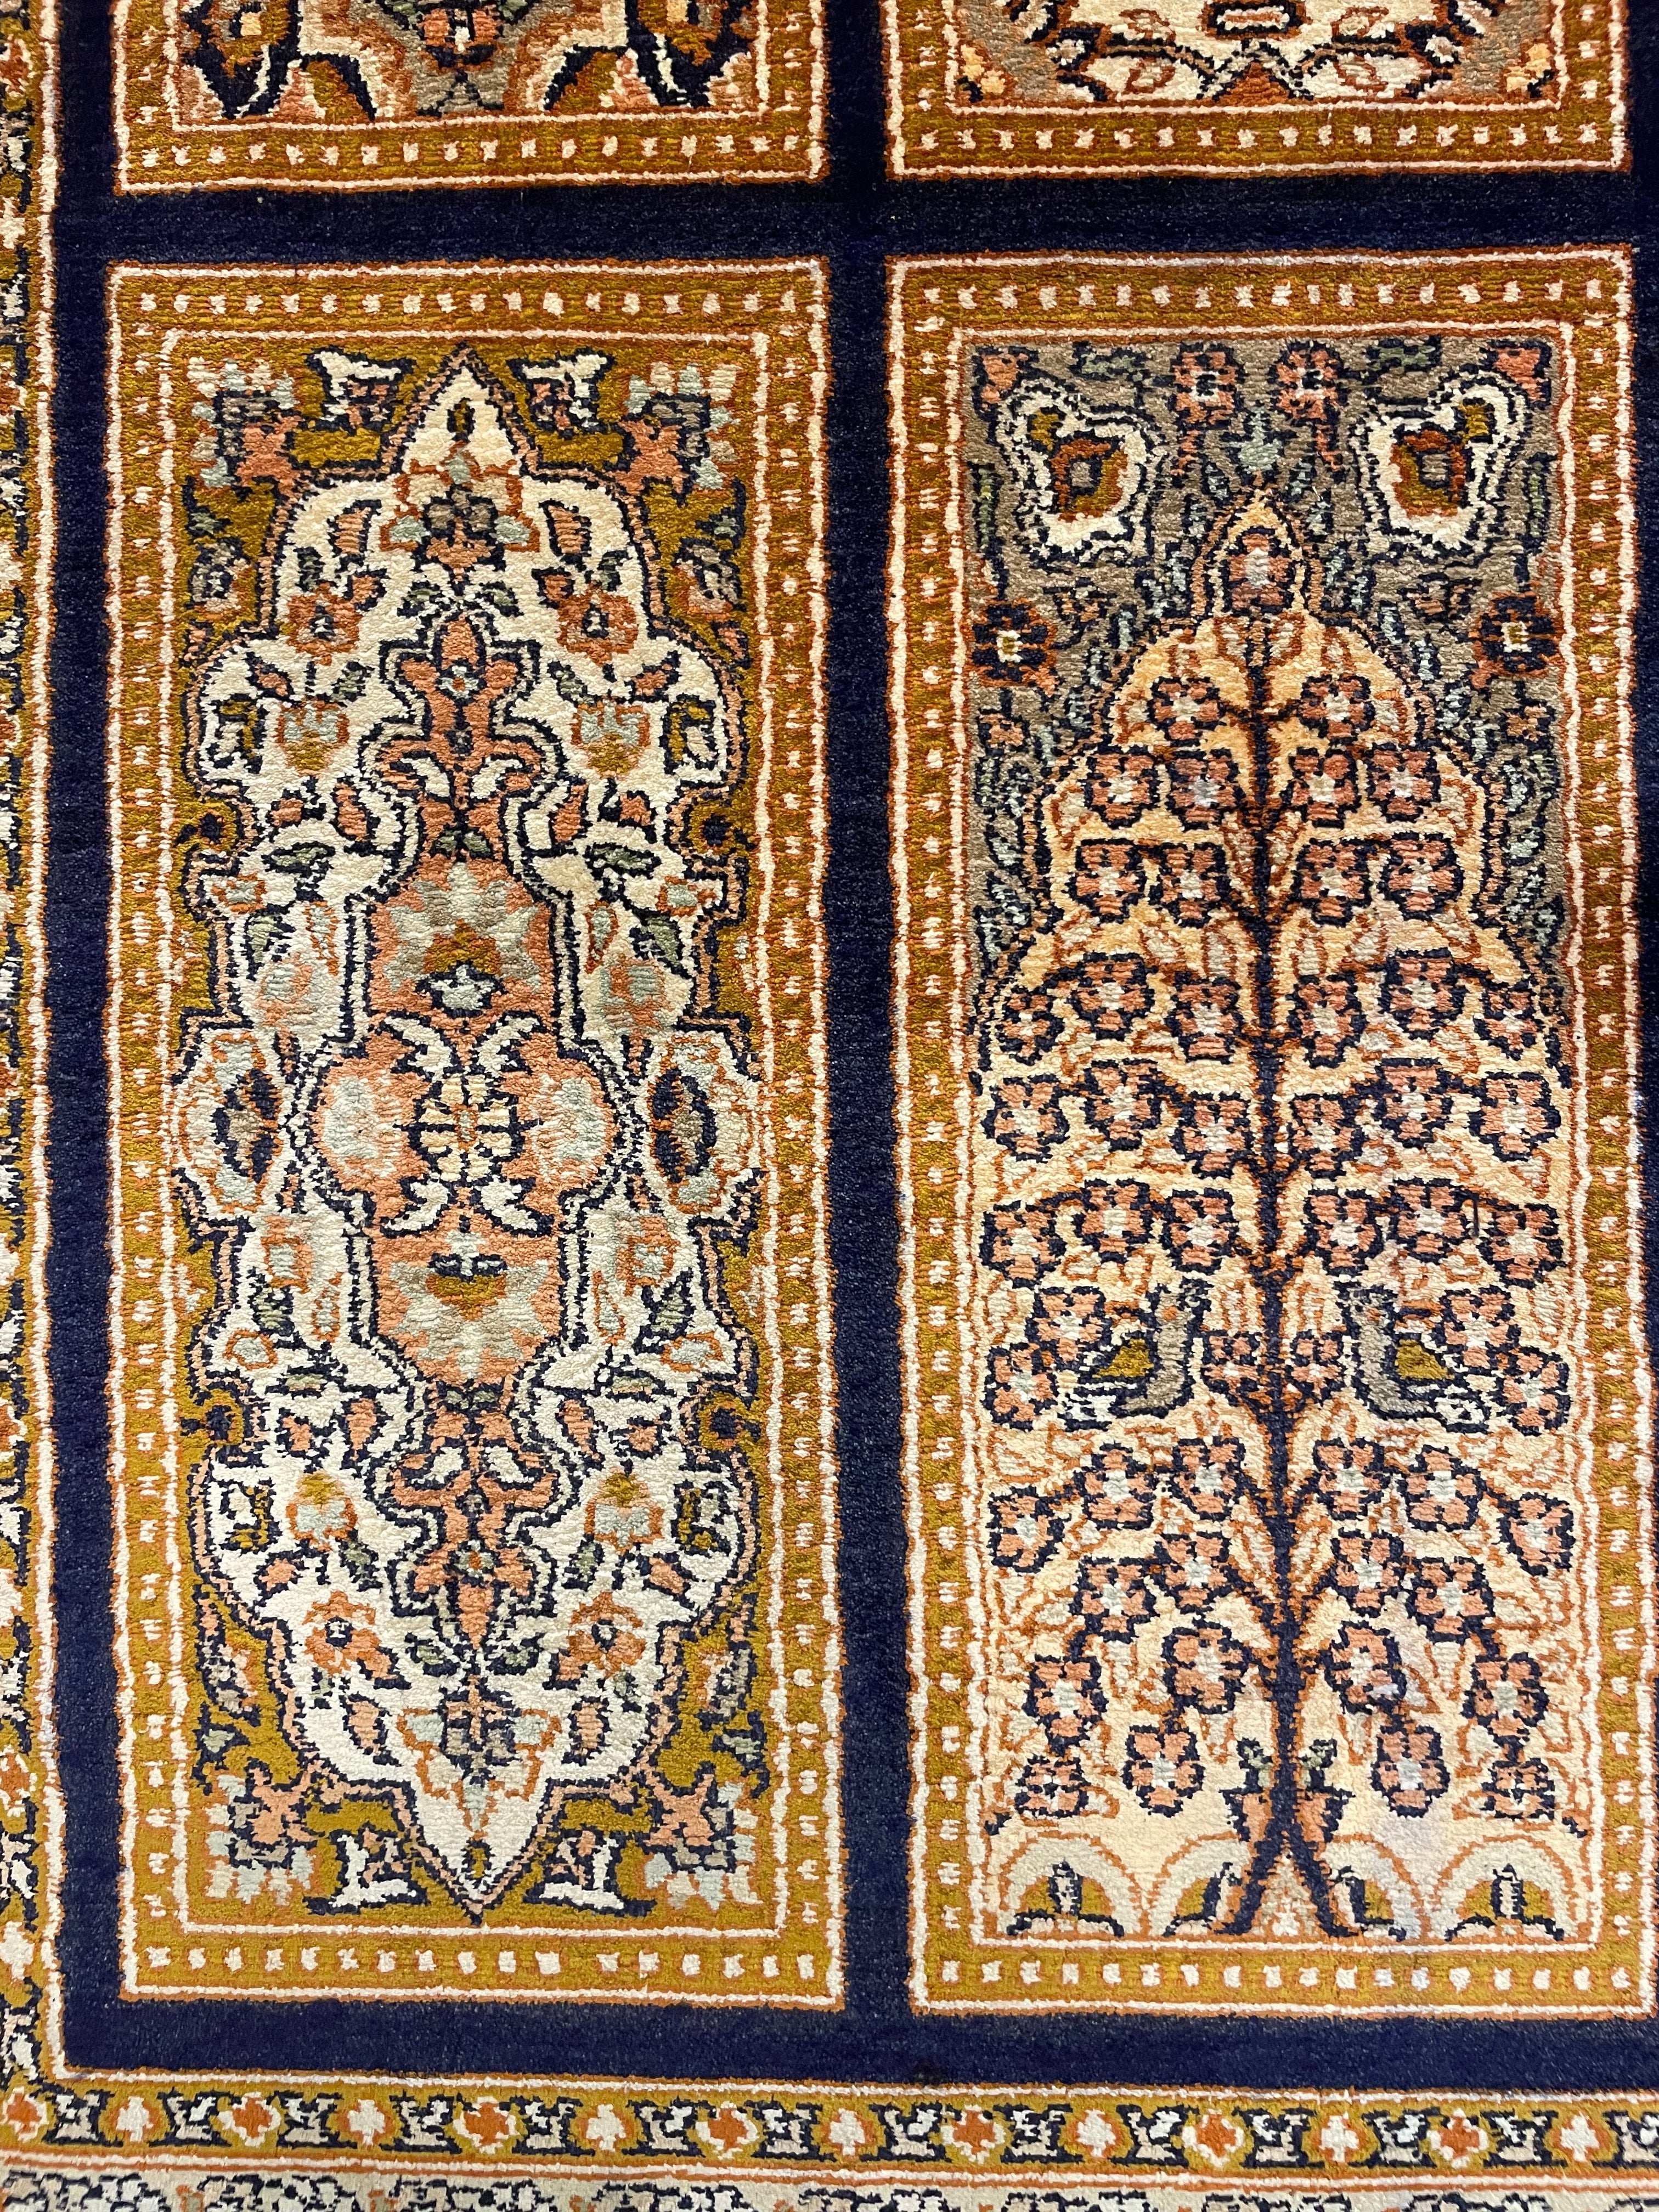 Carpet in a Carpet Silk